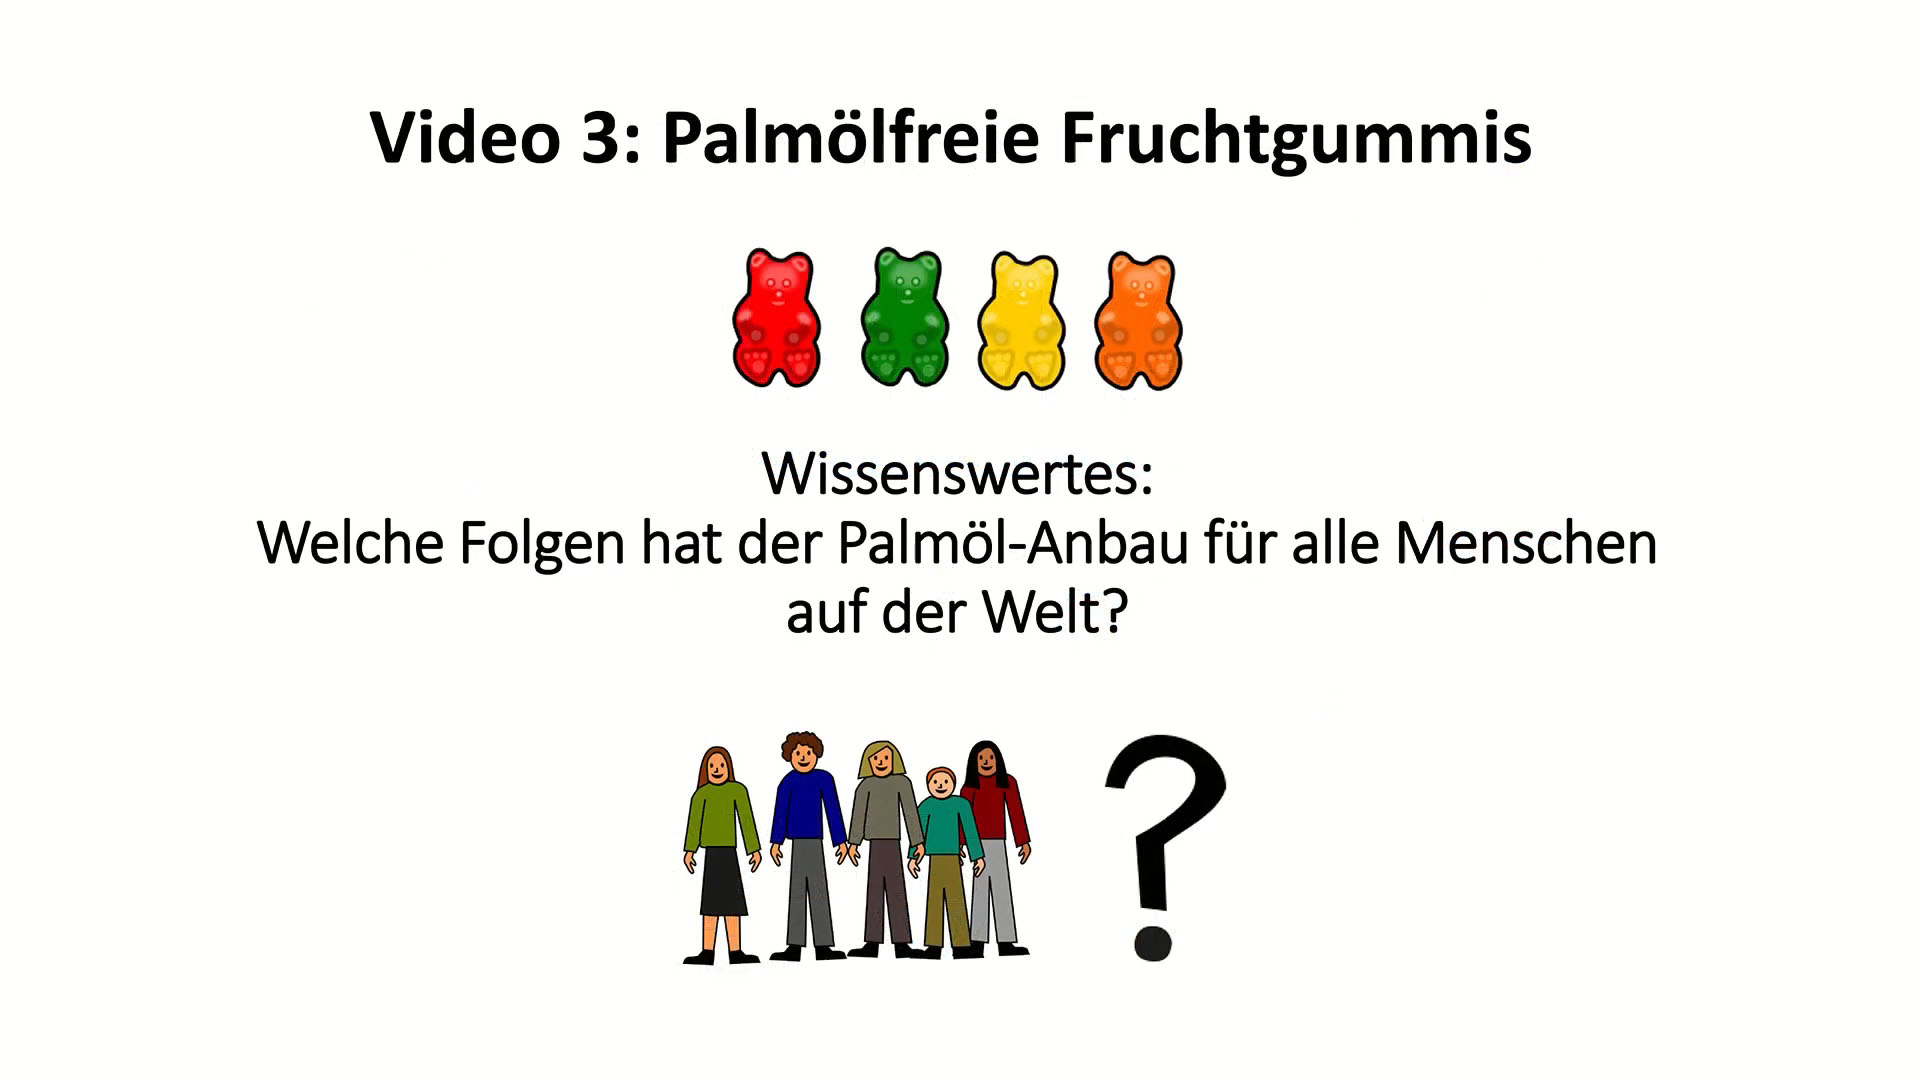 palmoelfrei video 3